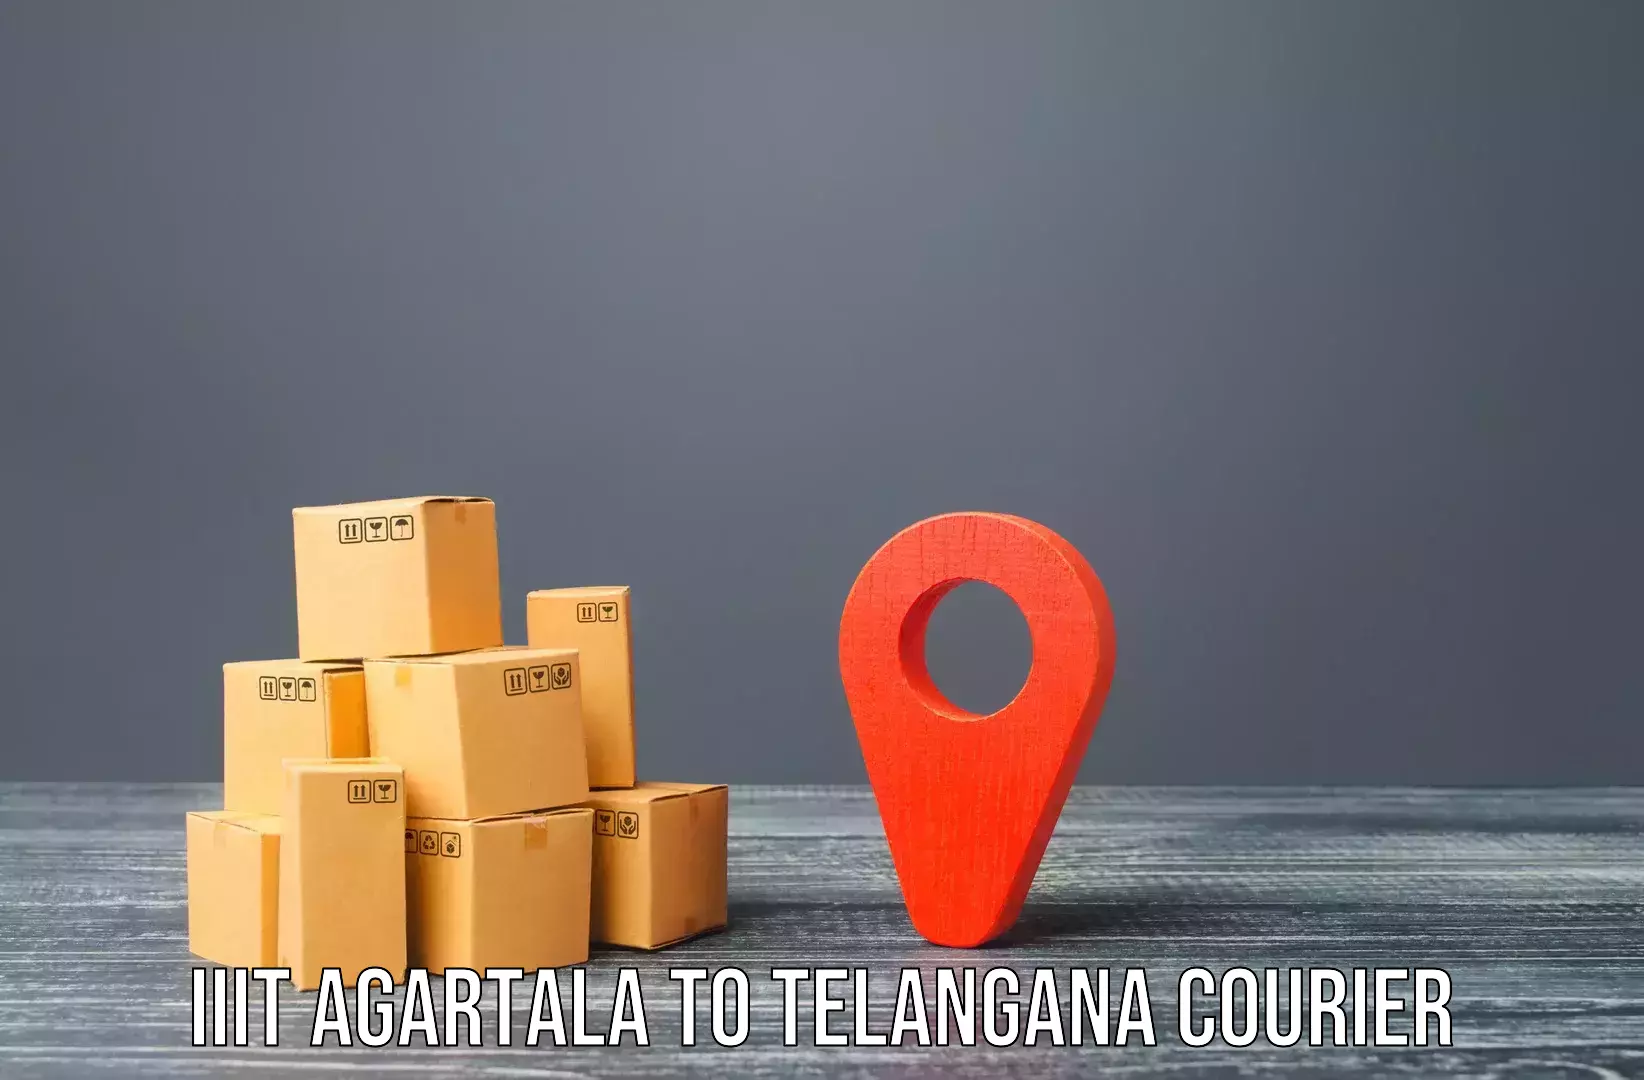 Custom moving and storage IIIT Agartala to Balanagar